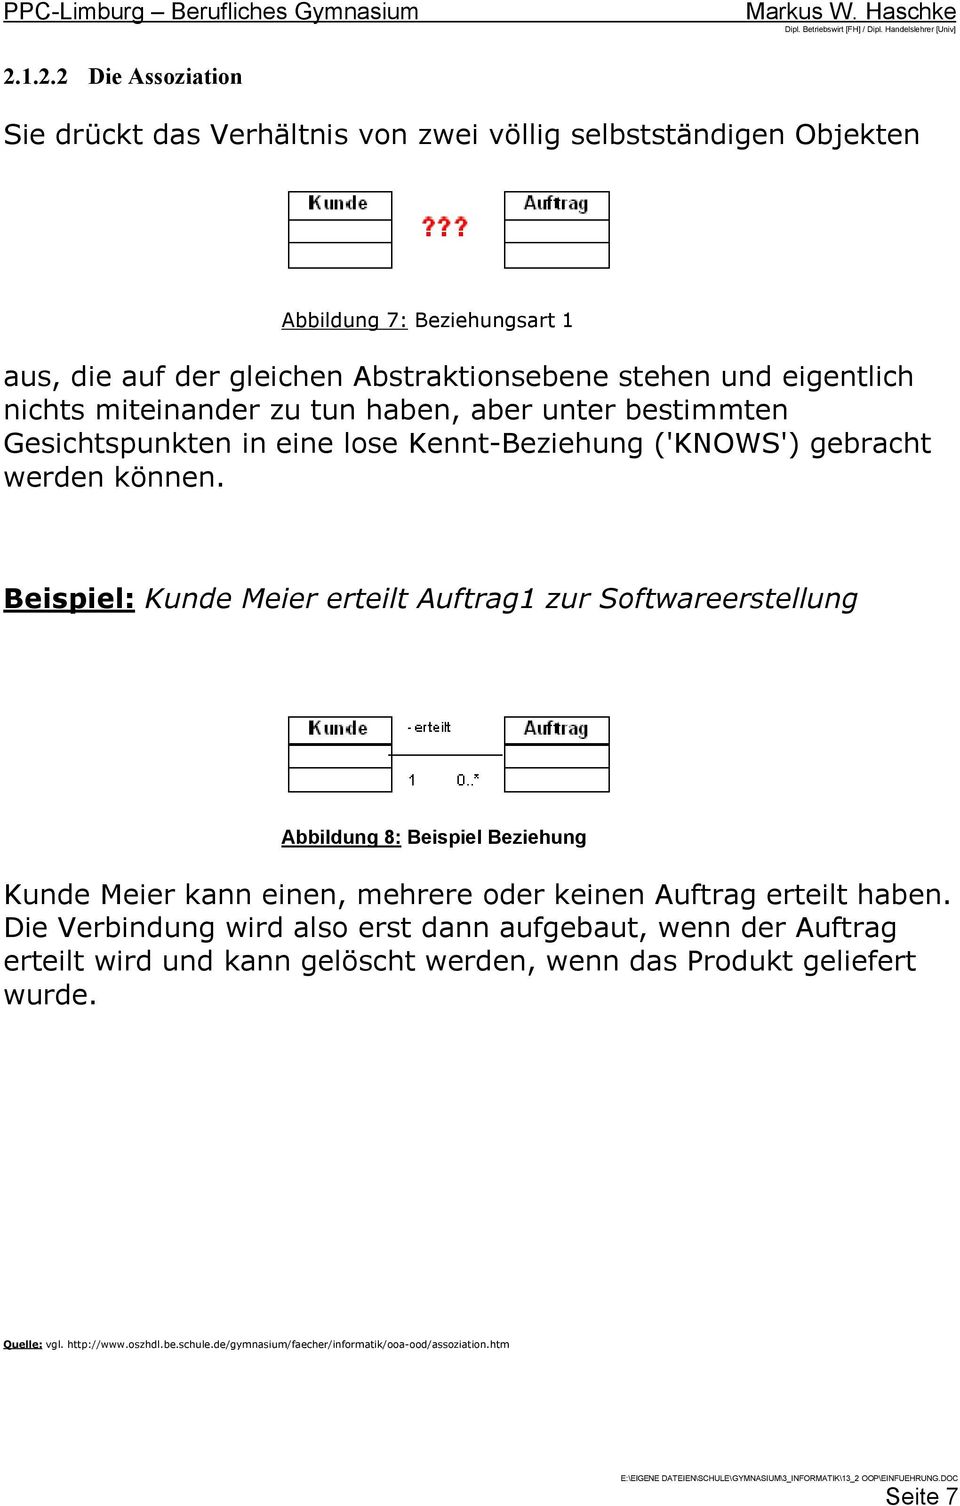 Beispiel: Kunde Meier erteilt Auftrag1 zur Softwareerstellung Abbildung 8: Beispiel Beziehung Kunde Meier kann einen, mehrere oder keinen Auftrag erteilt haben.